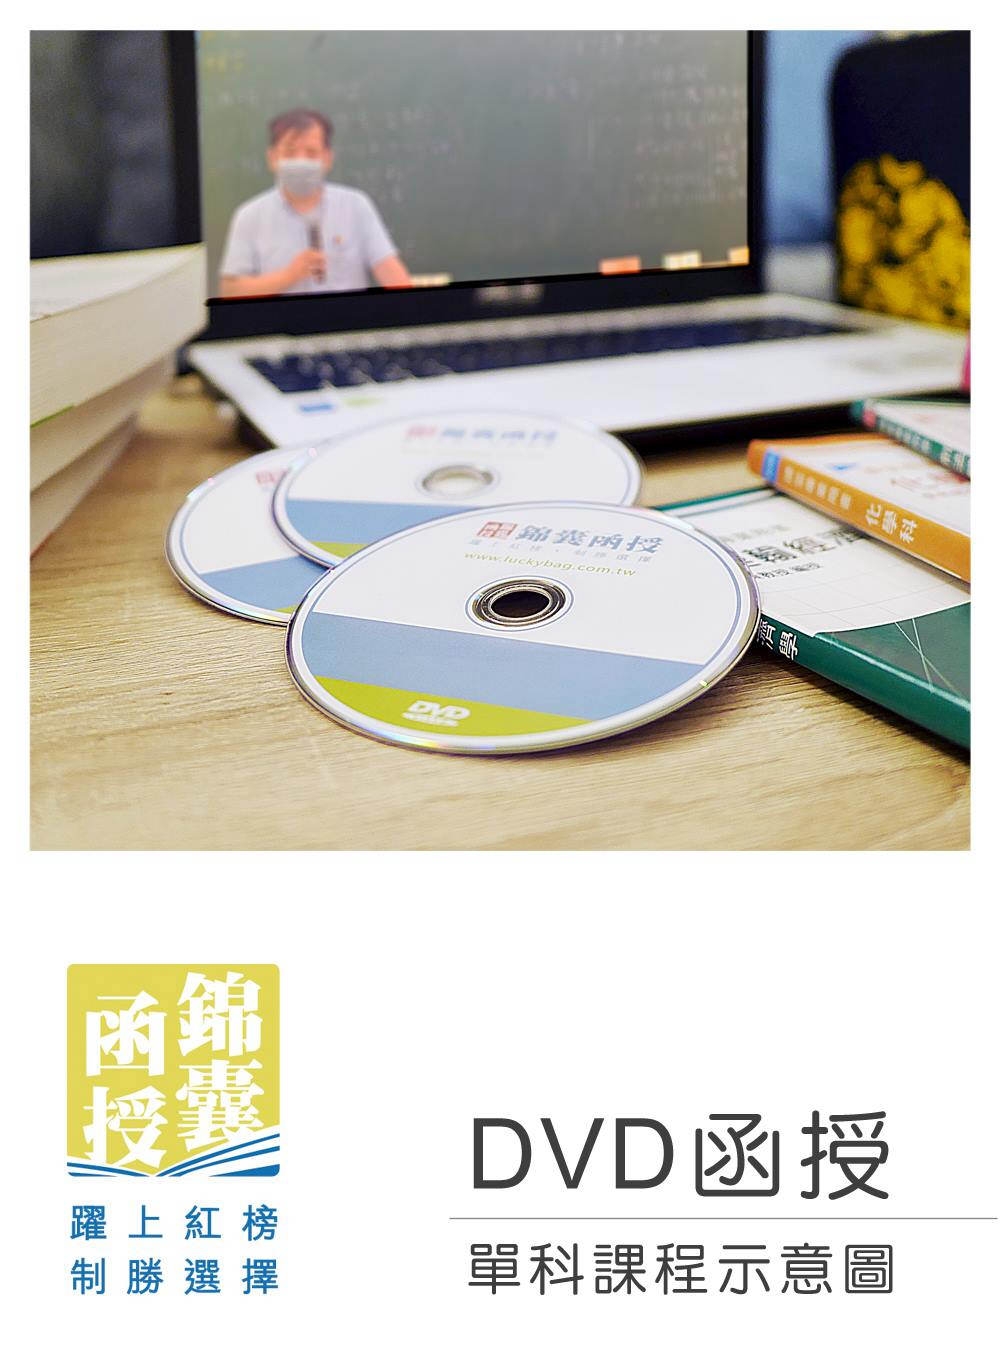 【DVD函授】法學緒論-單科課程(111版)